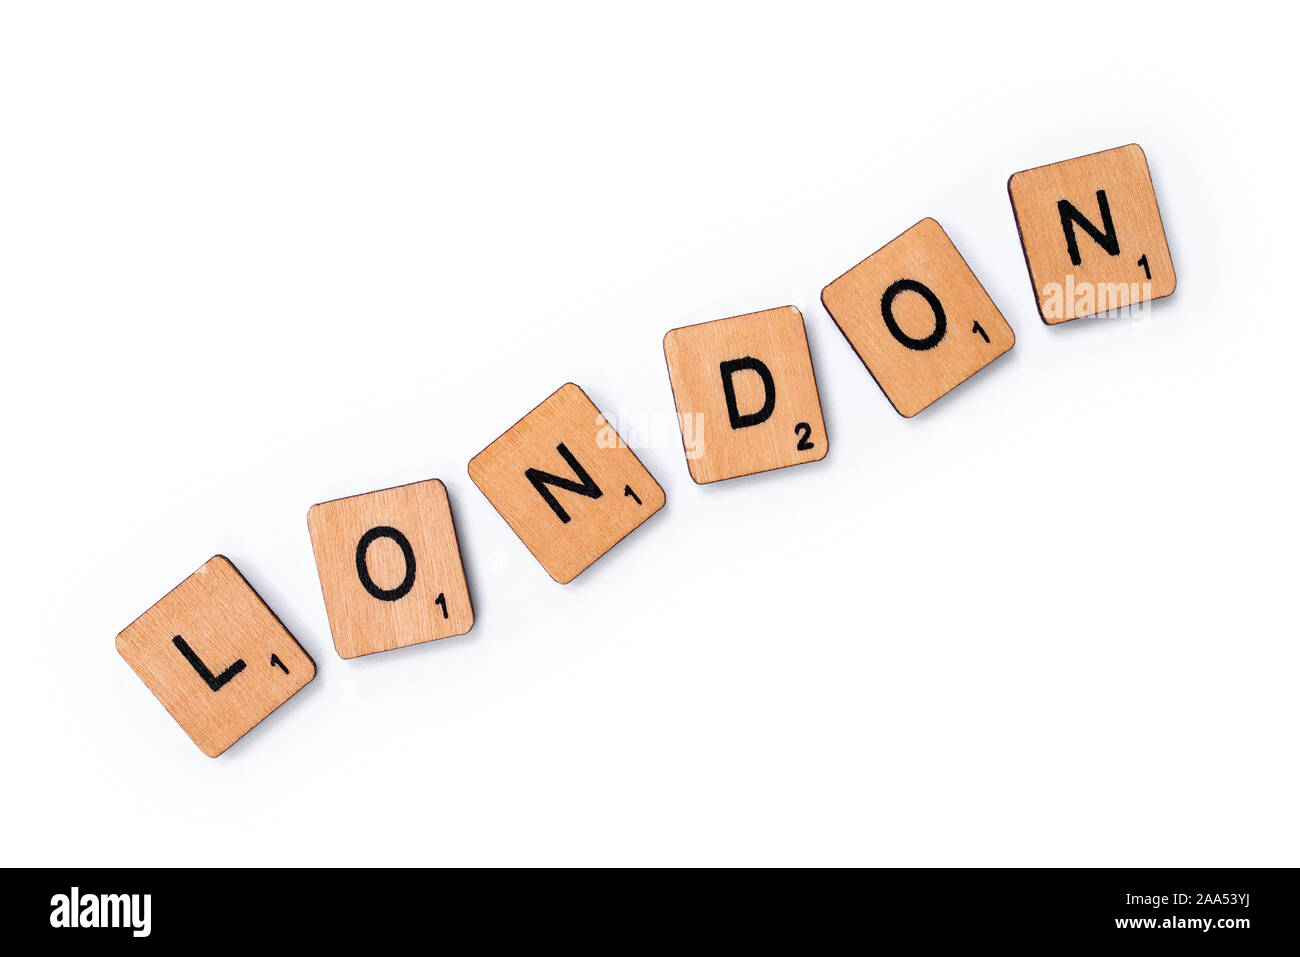 London, UK, 13. Juni 2019: Das Wort LONDON, Dinkel mit hölzernen Buchstabensteine über einem weißen Hintergrund. Stockfoto